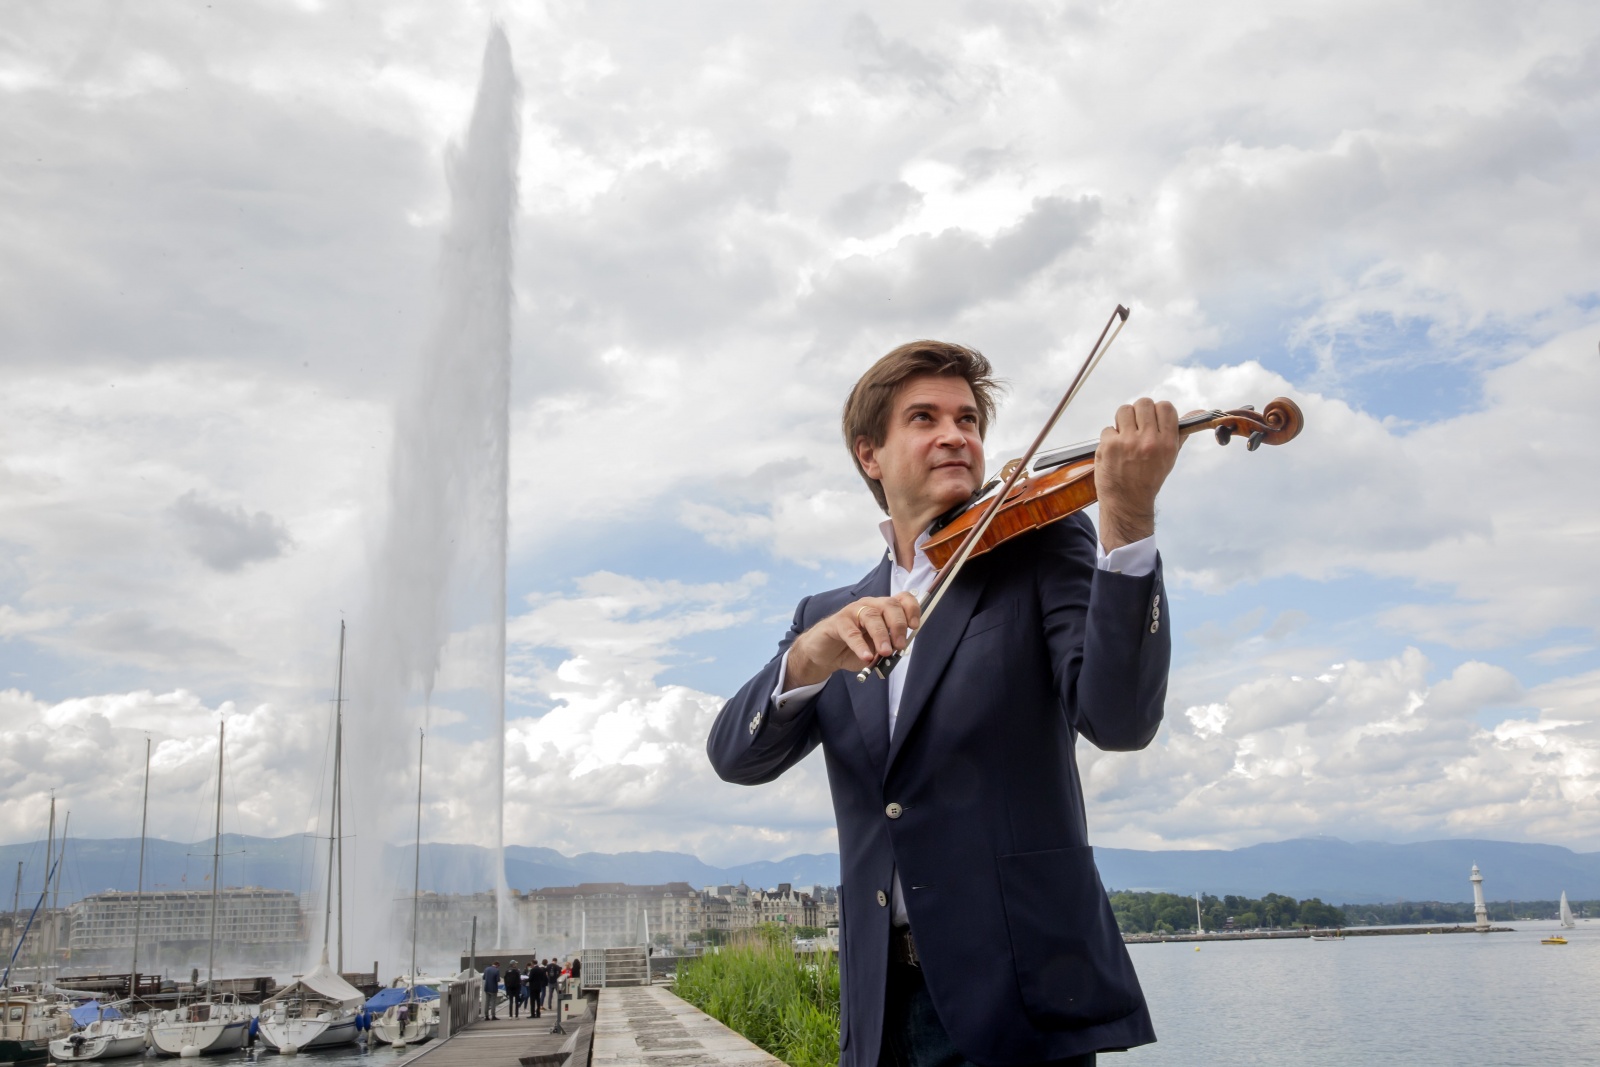 Monsieur Fabrizio von Arx, violoniste